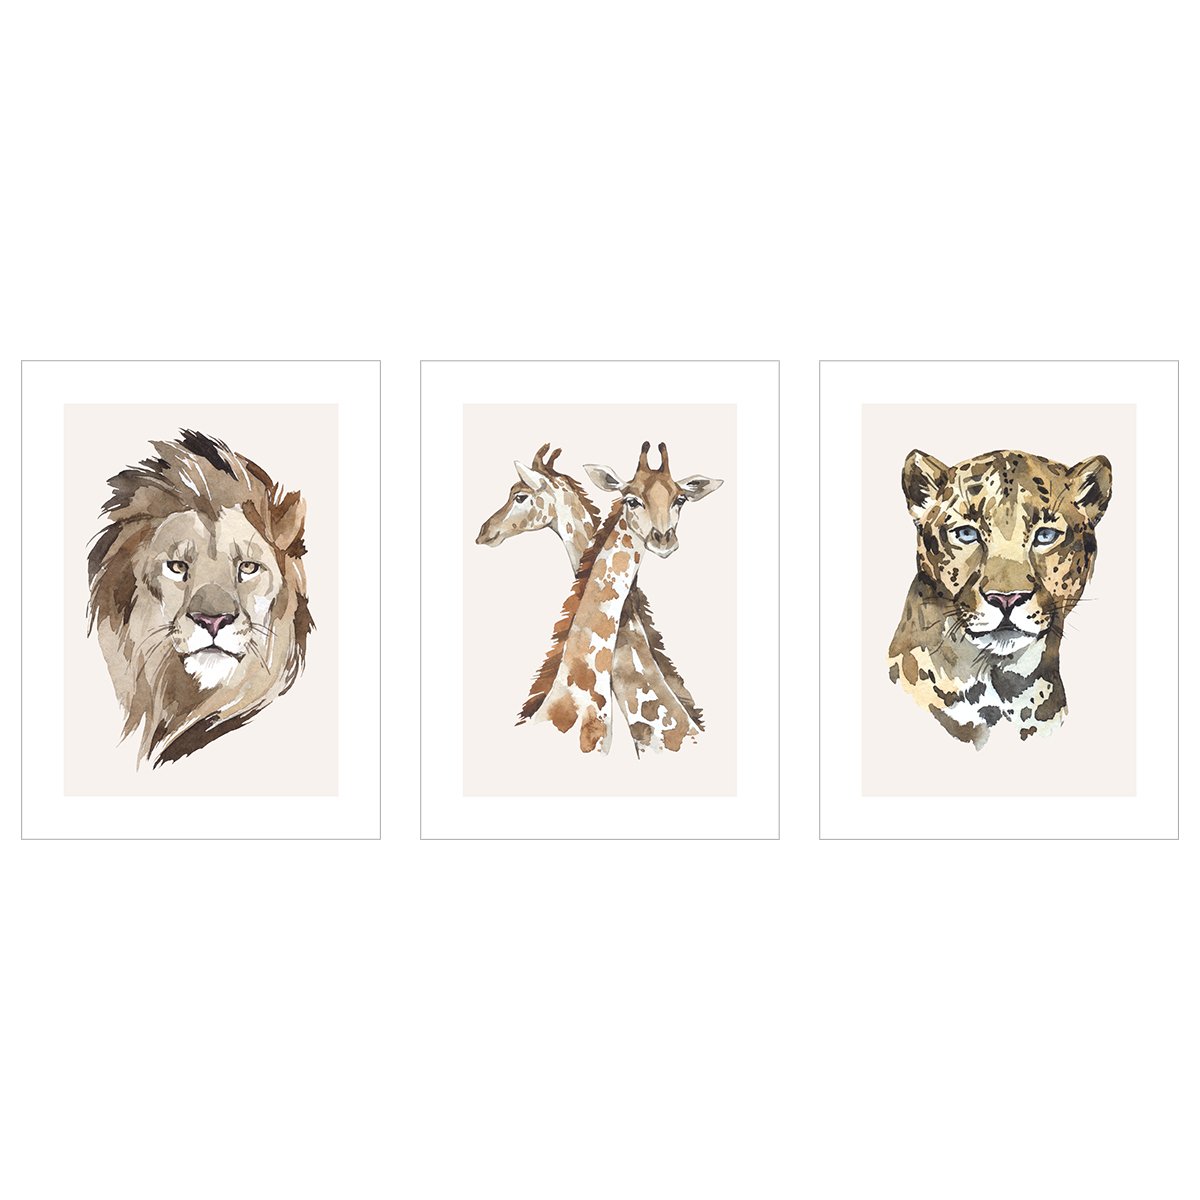 Plakaty z dzikimi zwierzętami Afryki - zestaw trzech plakatów